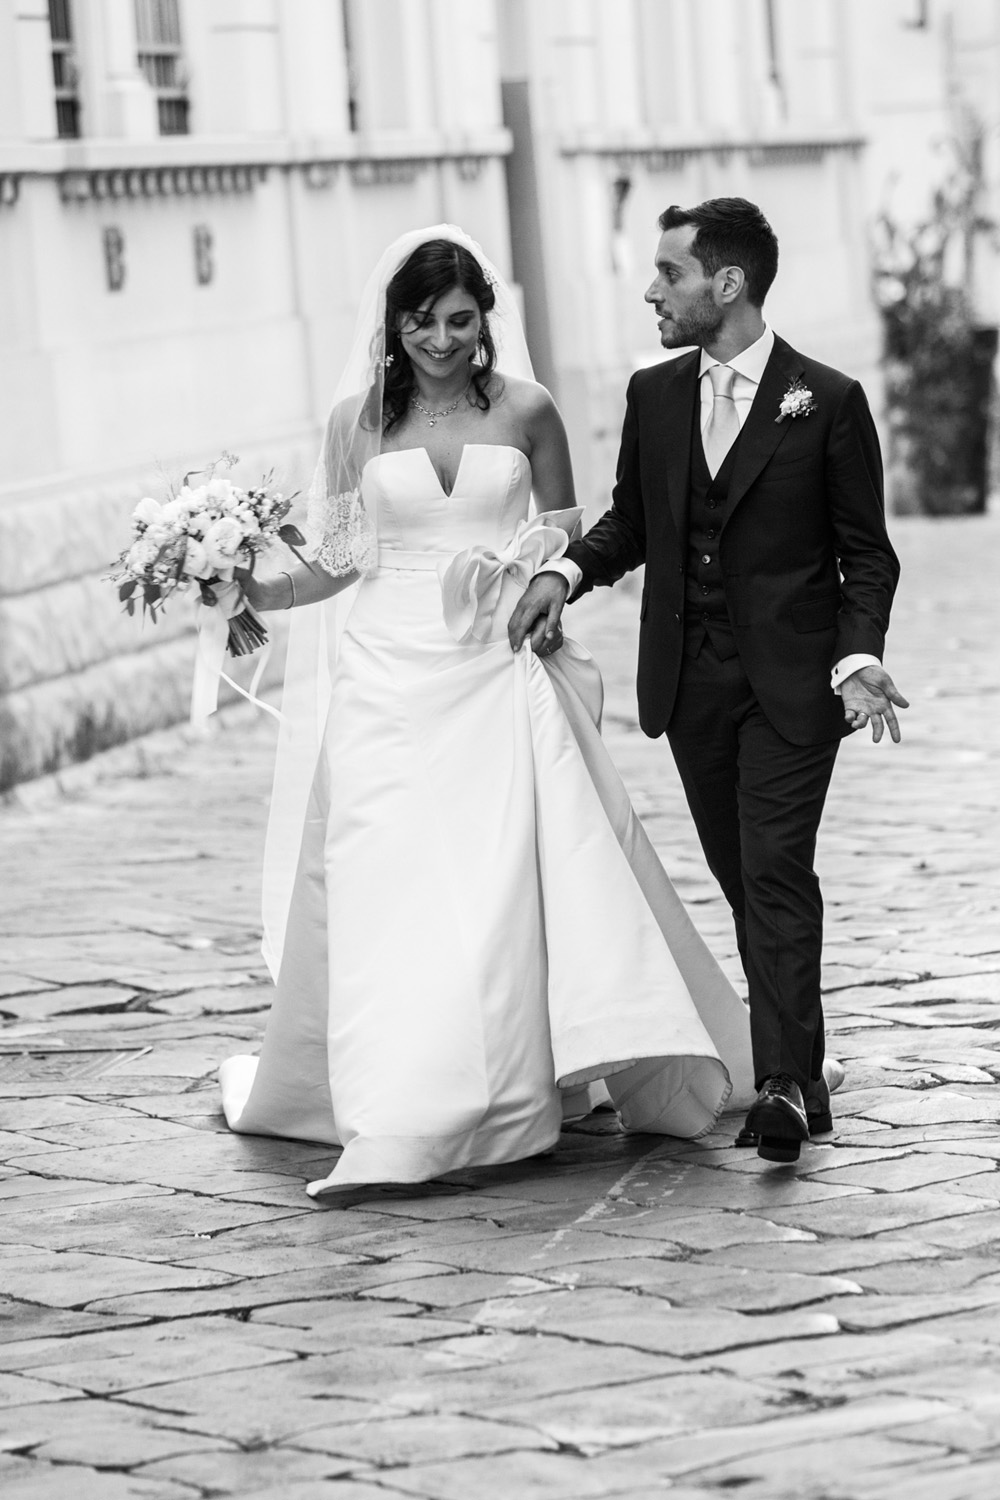 Gabriele_MariaTeresa_wedding_Castello_Monaci_0059